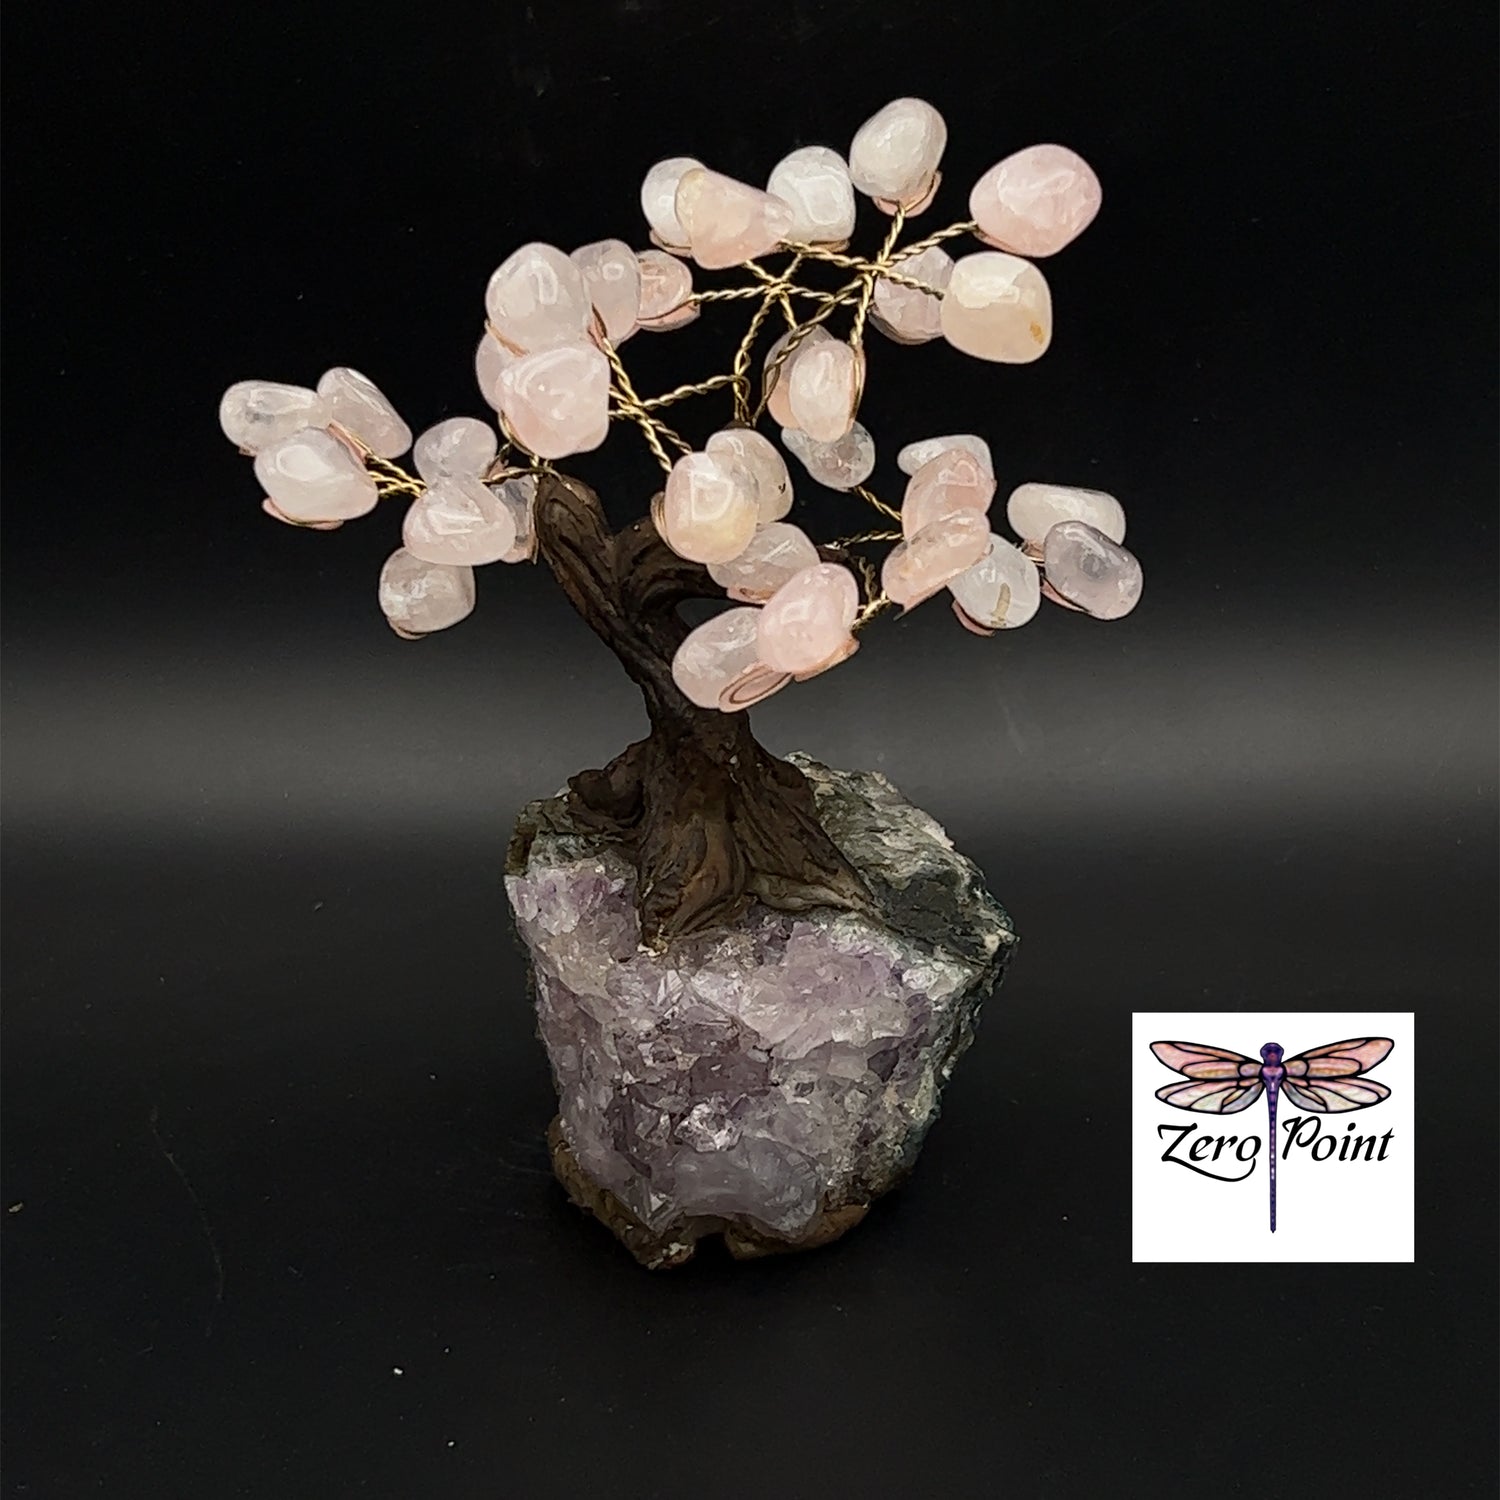 Gem Tree 6" - Zero Point Crystals